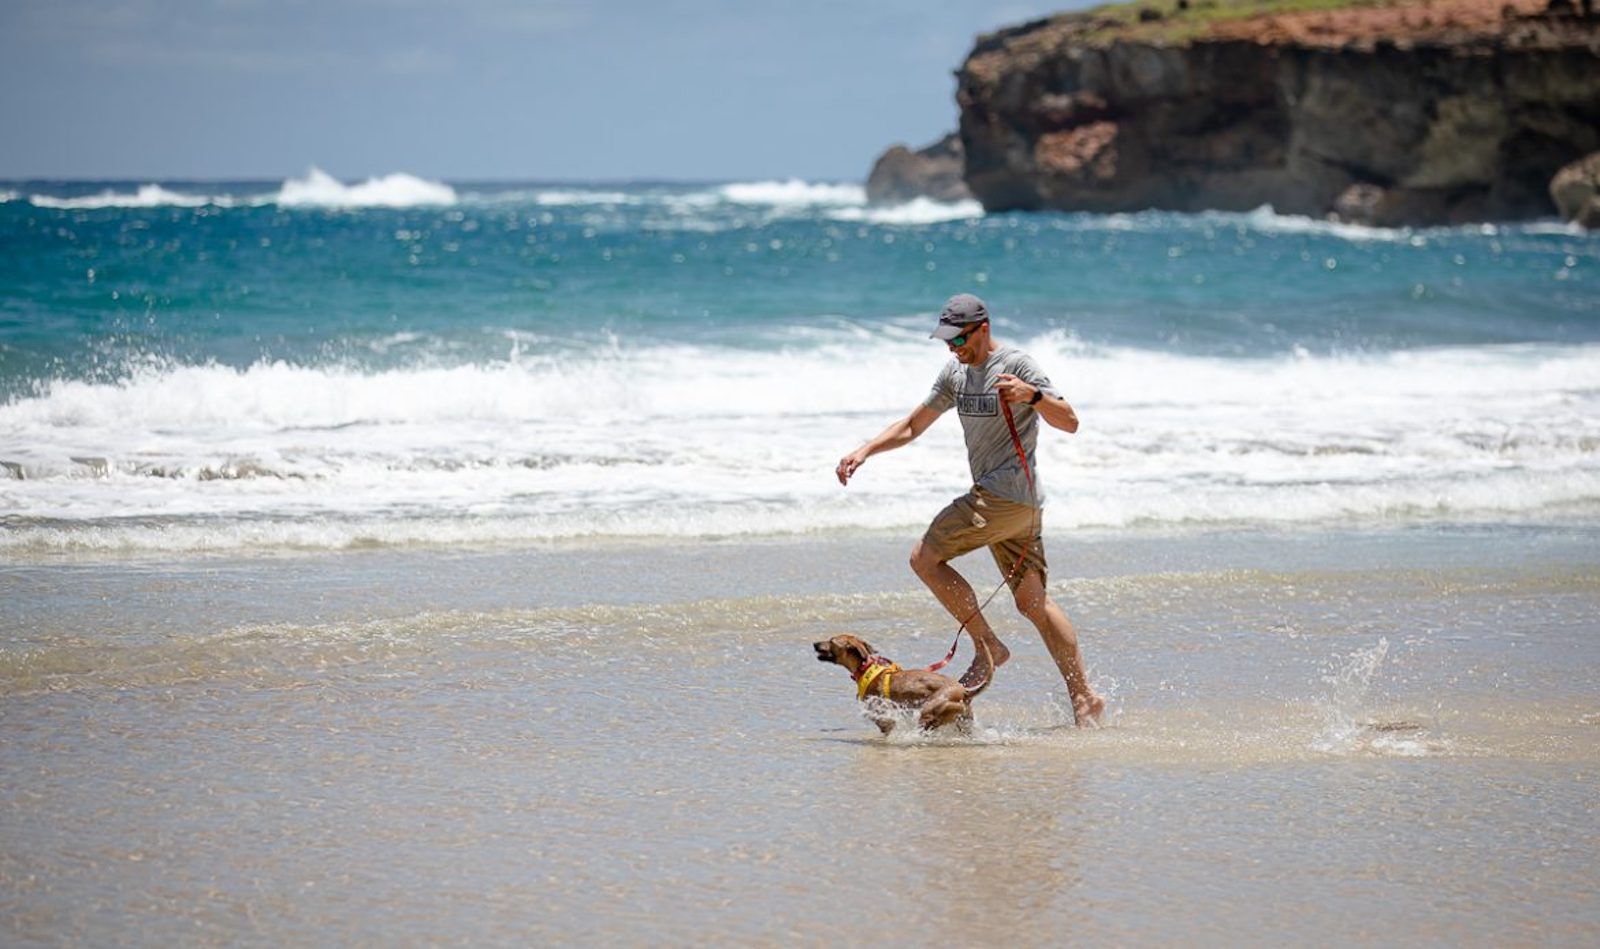 Kauai humane society dog on a doggy field trip at the beach